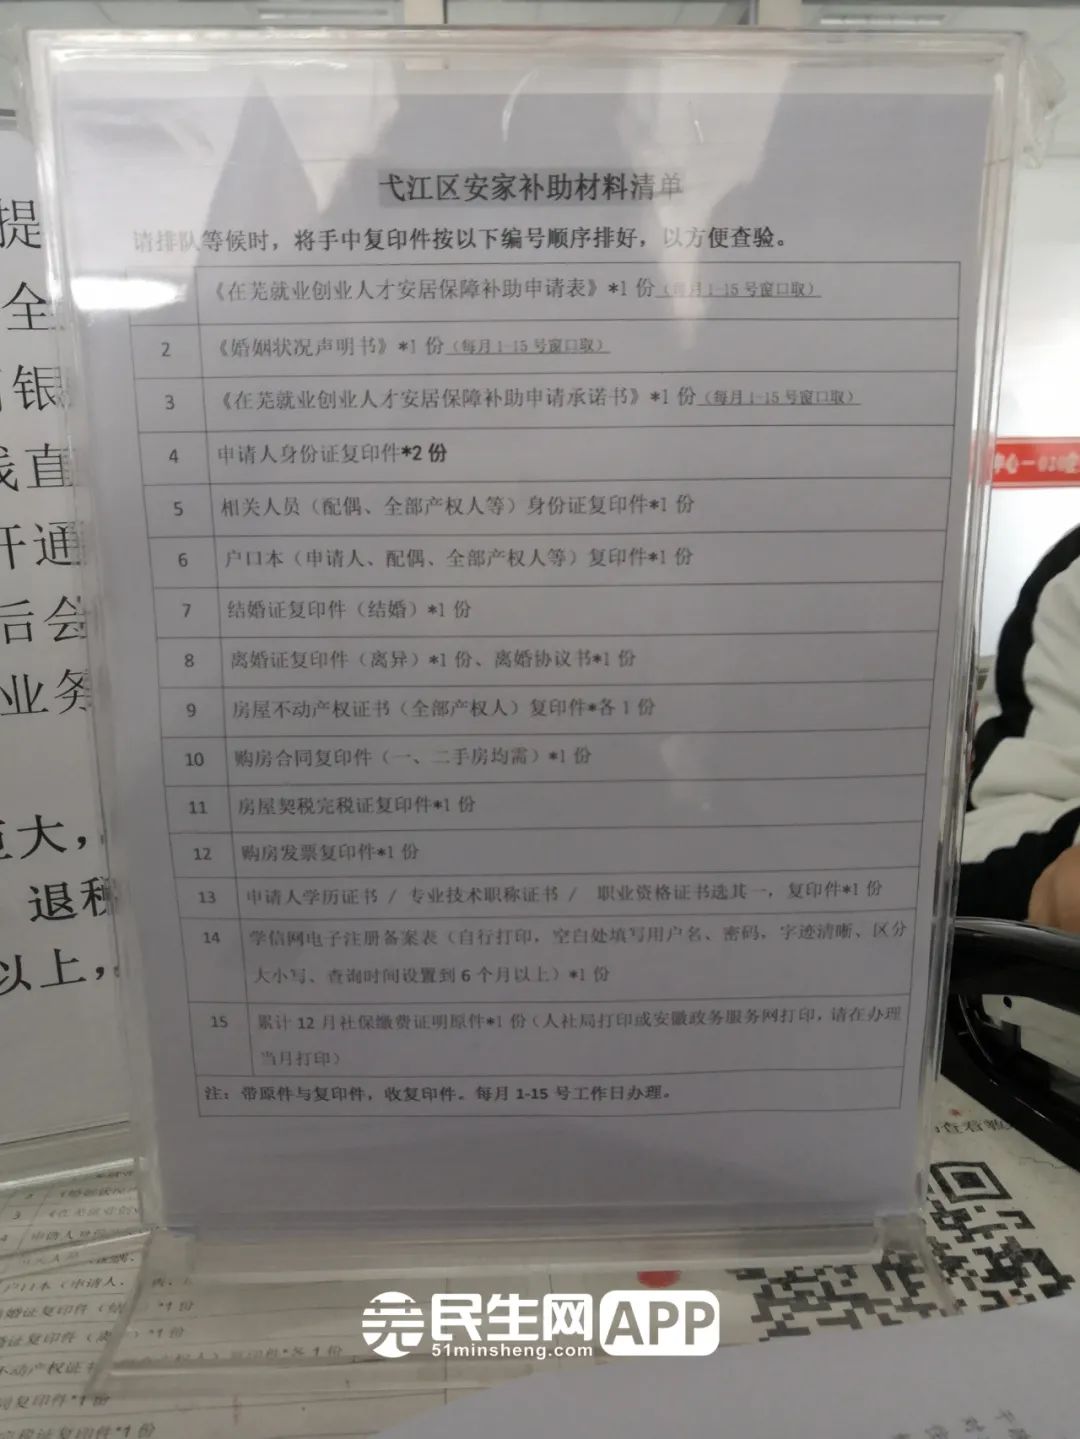 3、芜湖大学生就业补贴如何申请：如何申请研究生补贴？